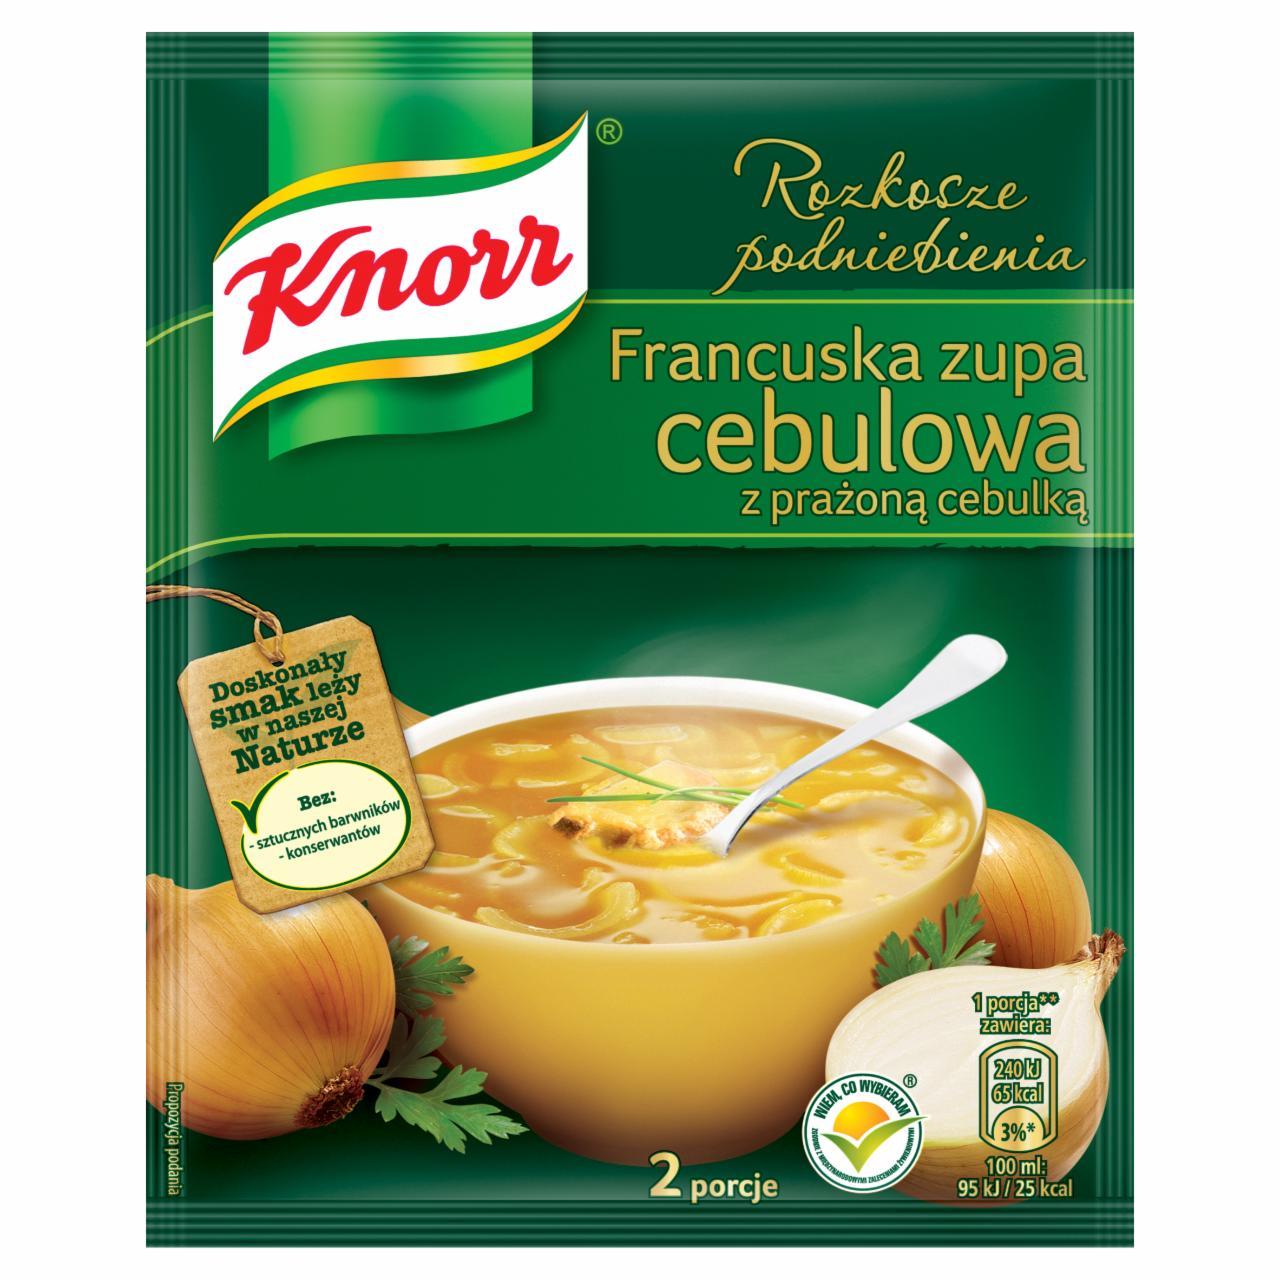 Zdjęcia - Knorr Rozkosze podniebienia Francuska zupa cebulowa 31 g